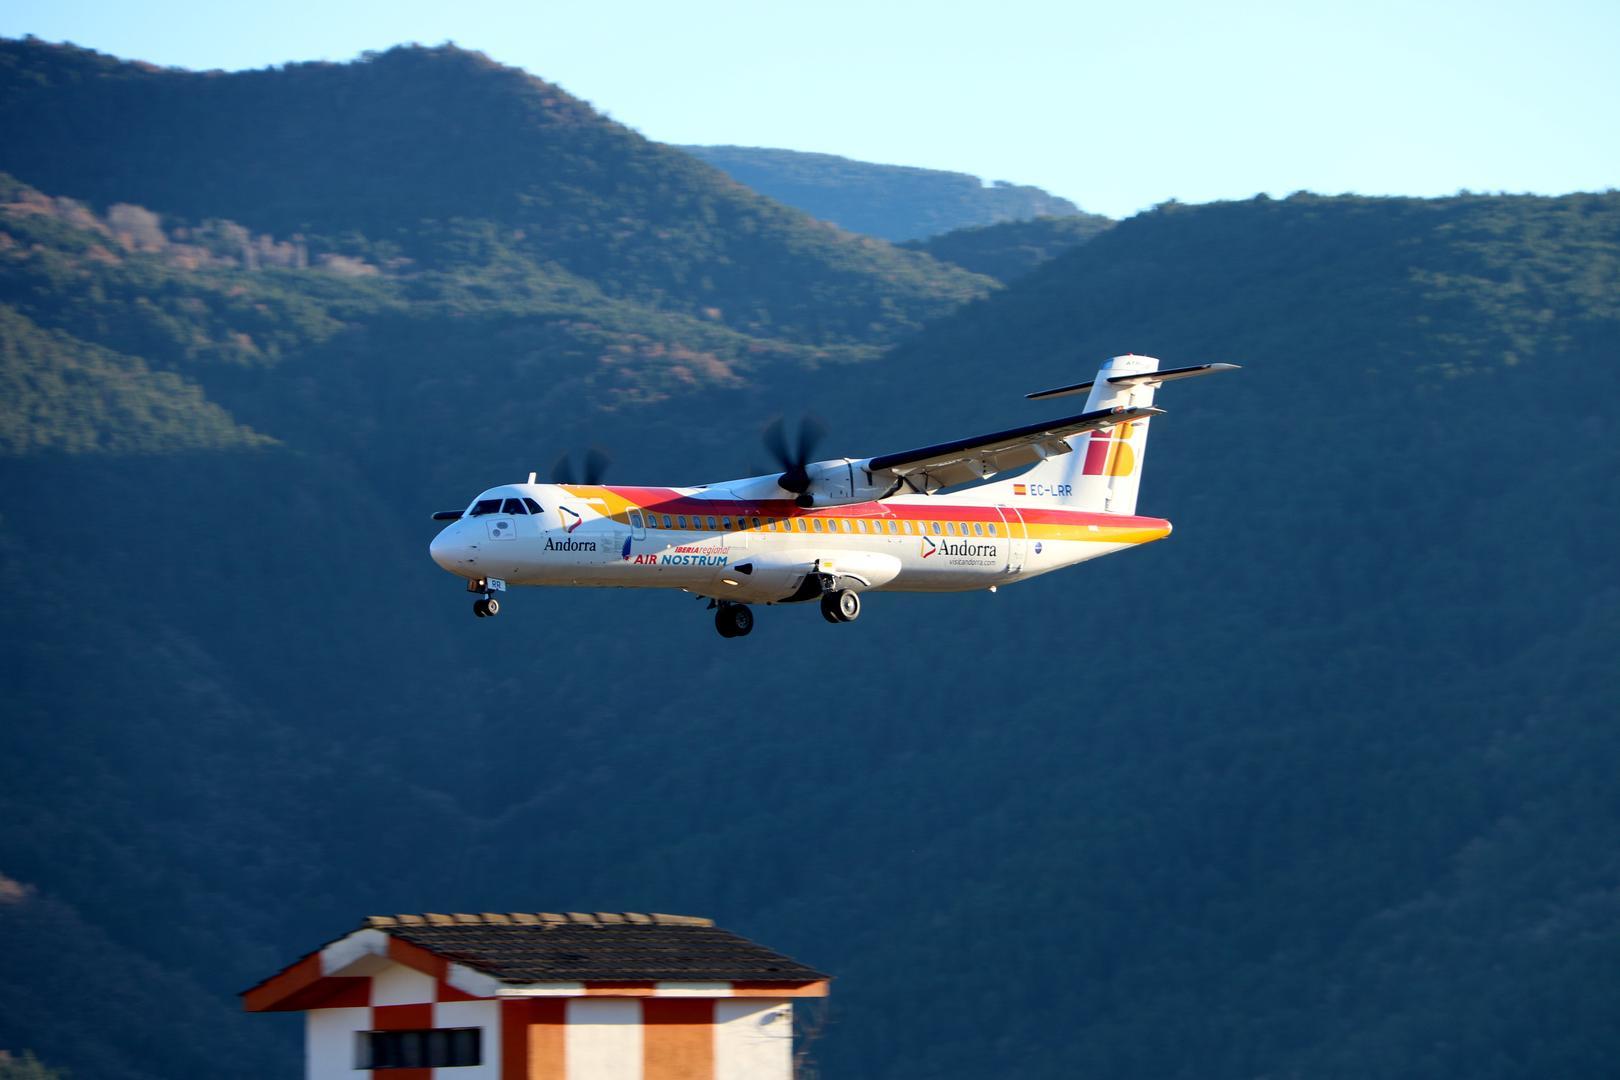 Pla de detall de l'avió procedent de Madrid arribant a l'aeroport Andorra-La Seu que ha estrenat els vols regulars el 17 de desembre del 2021. (Horitzotal)